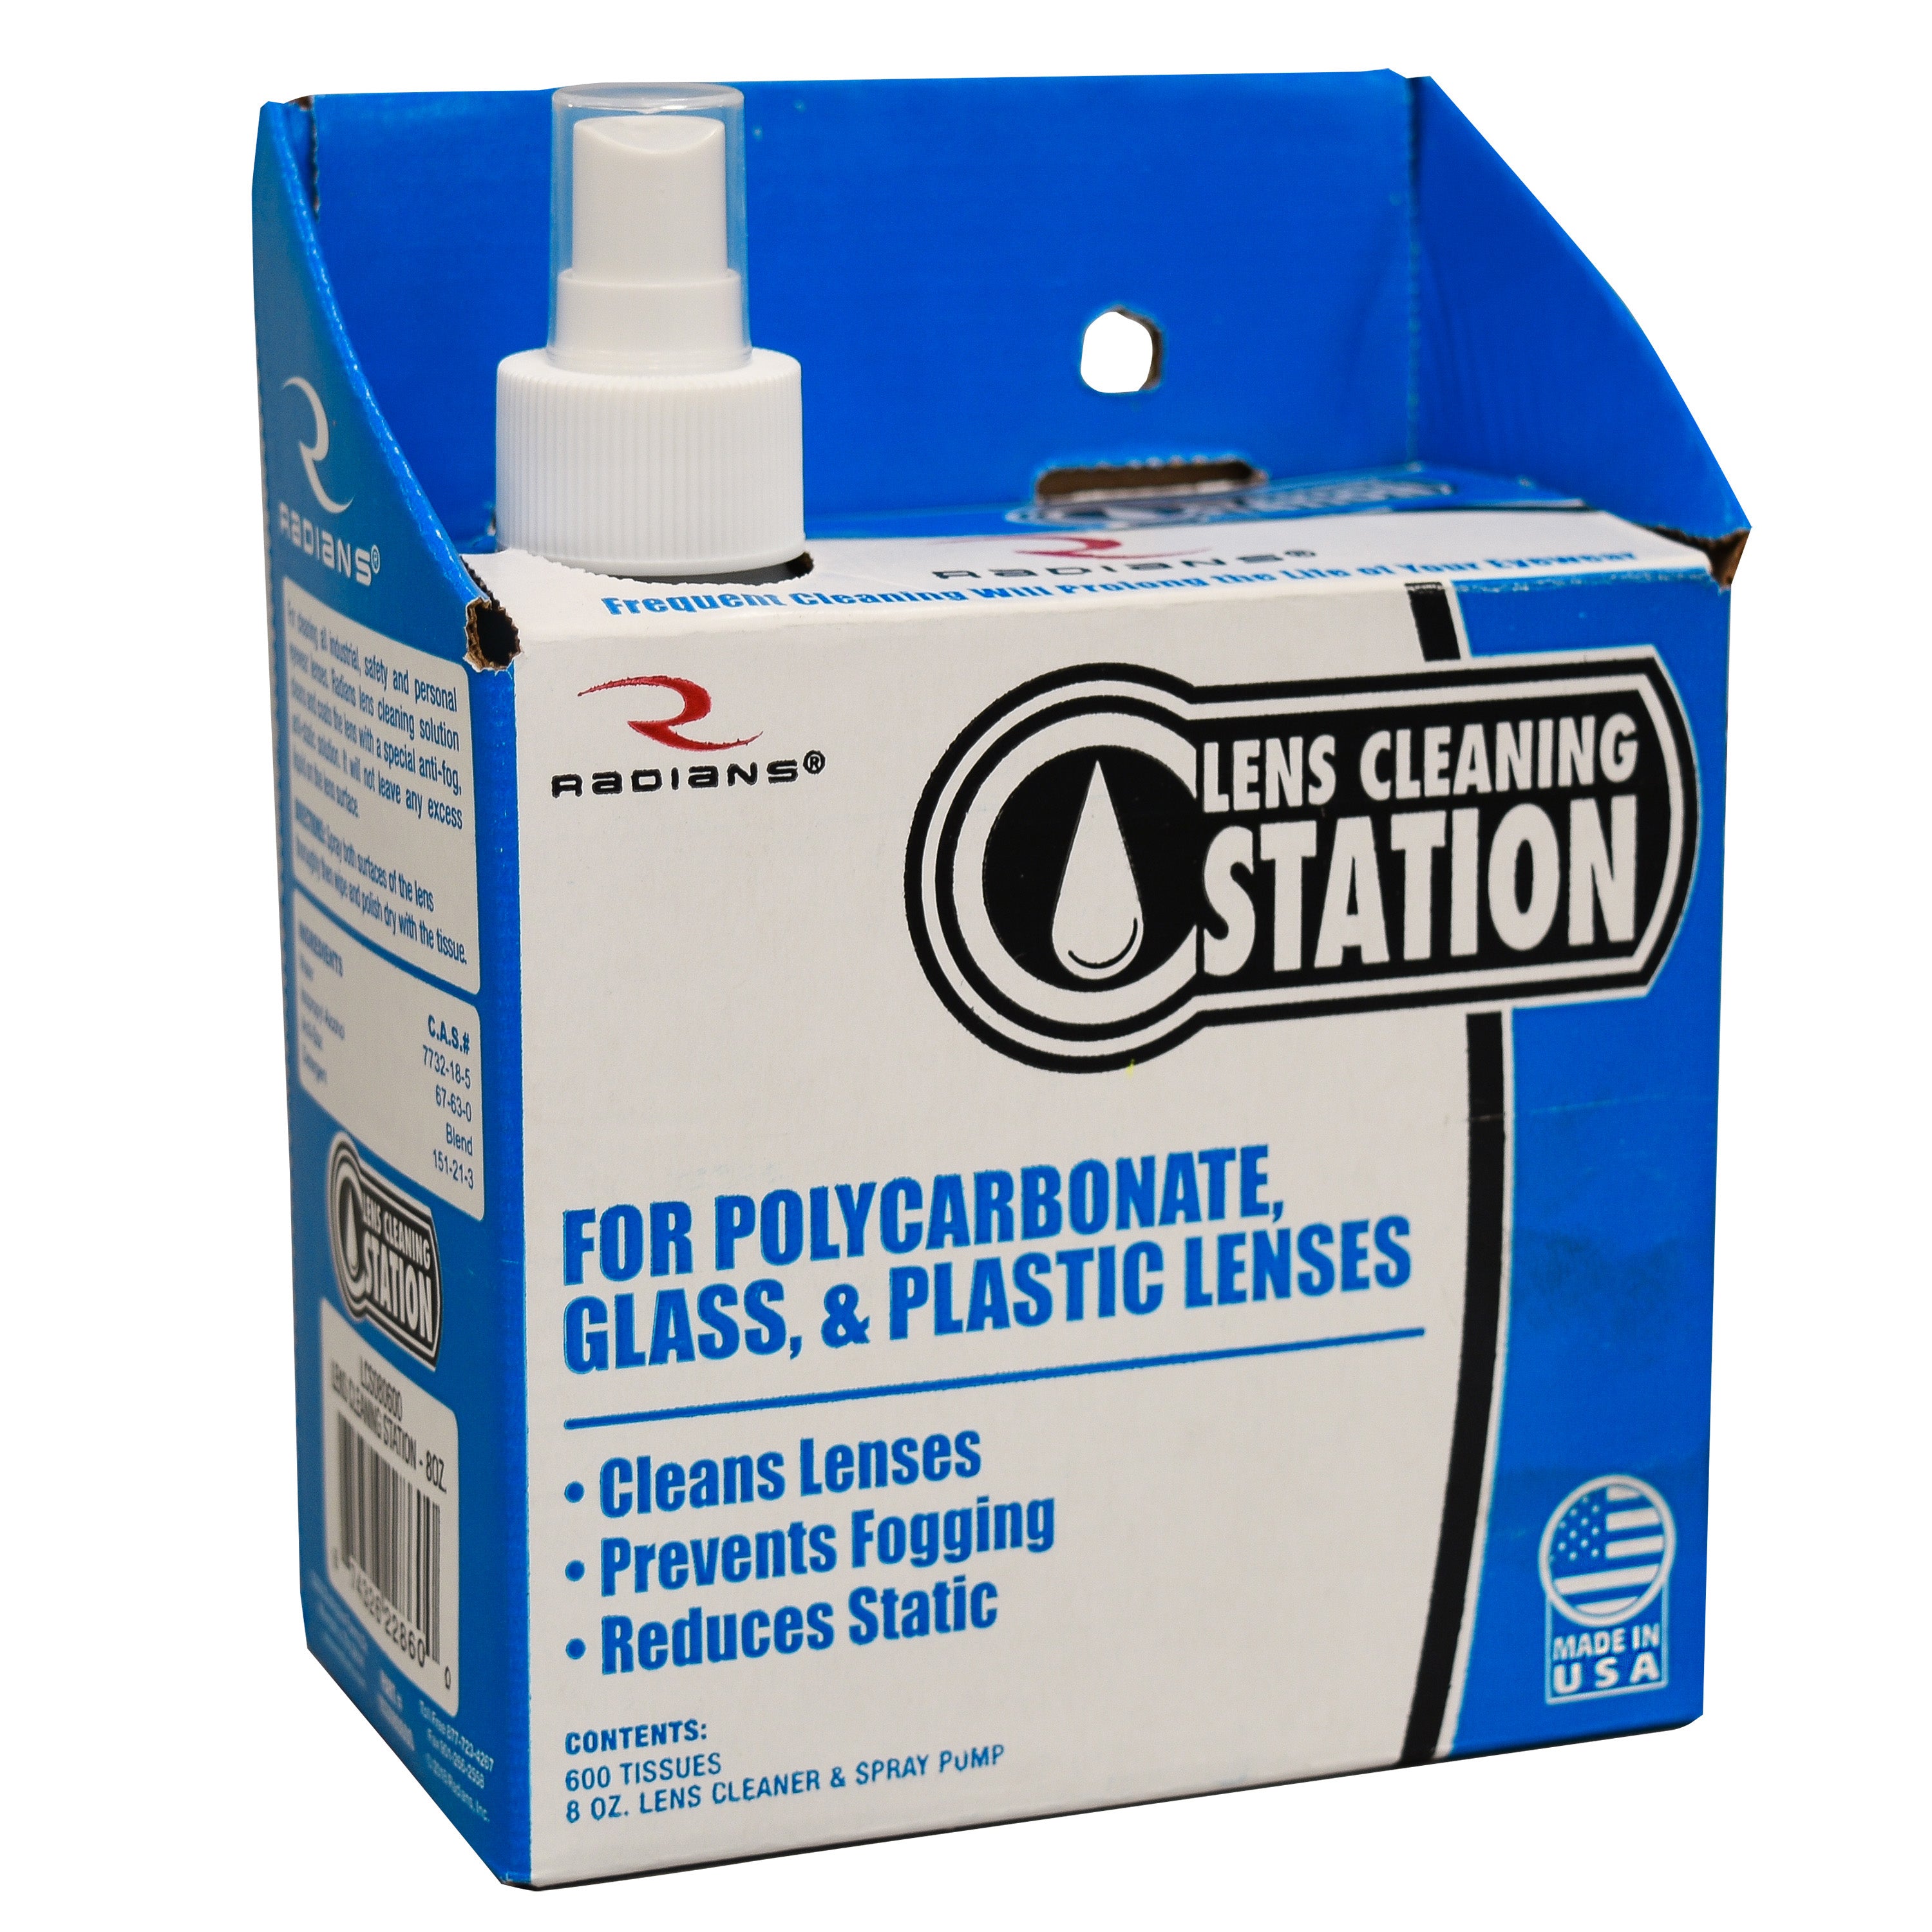 Estación de limpieza de lentes - Pequeña - Solución de 8 oz y 600 toallitas